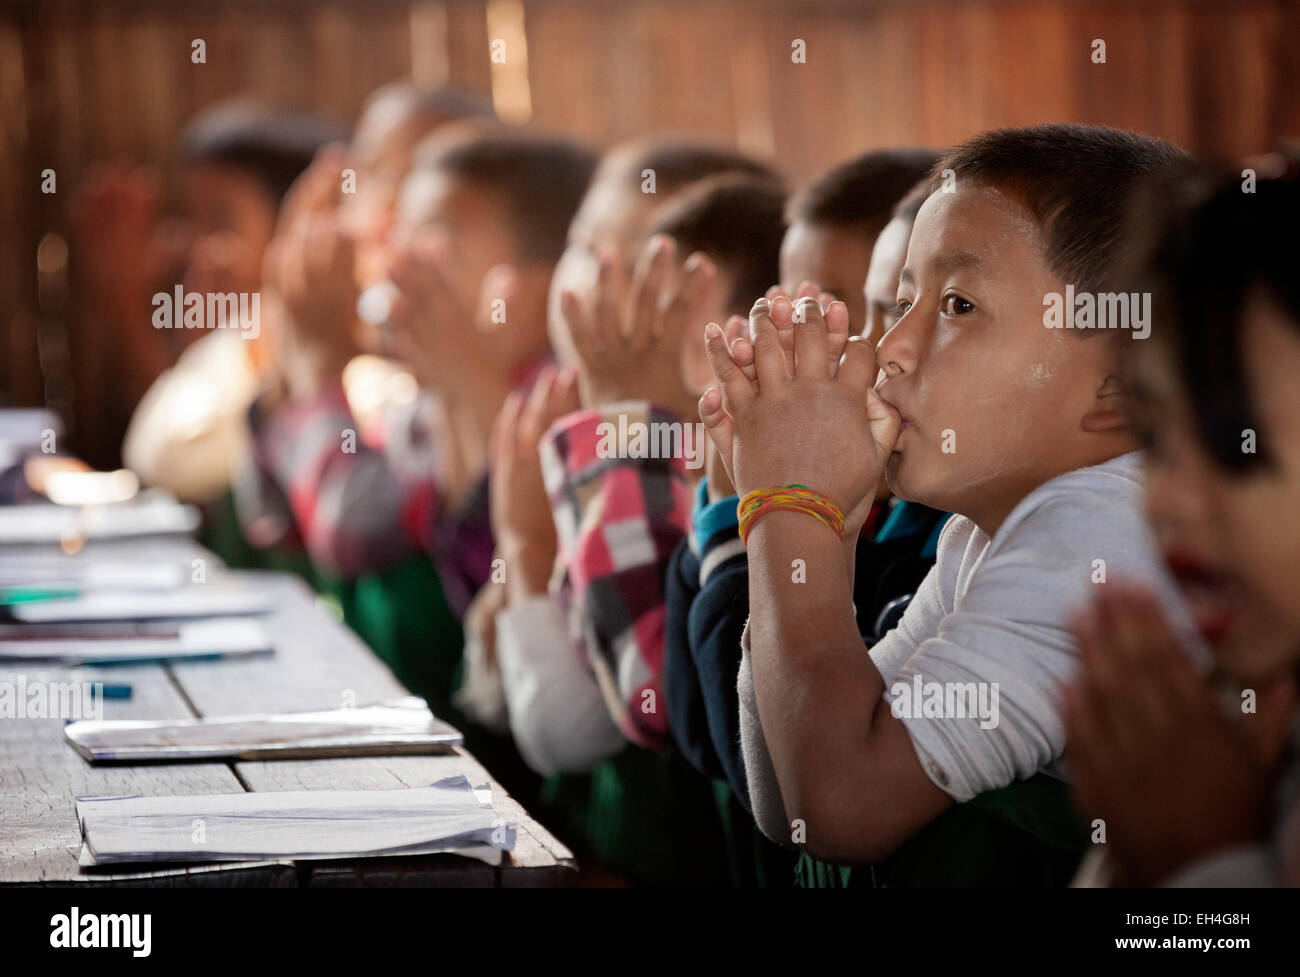 Junge Kinder in der Schule; Kinder, die zu Beginn des Schultages in ihrem Klassenzimmer beten, Kar Lar Dorfschule, Inle Lake, Myanmar Asia Stockfoto